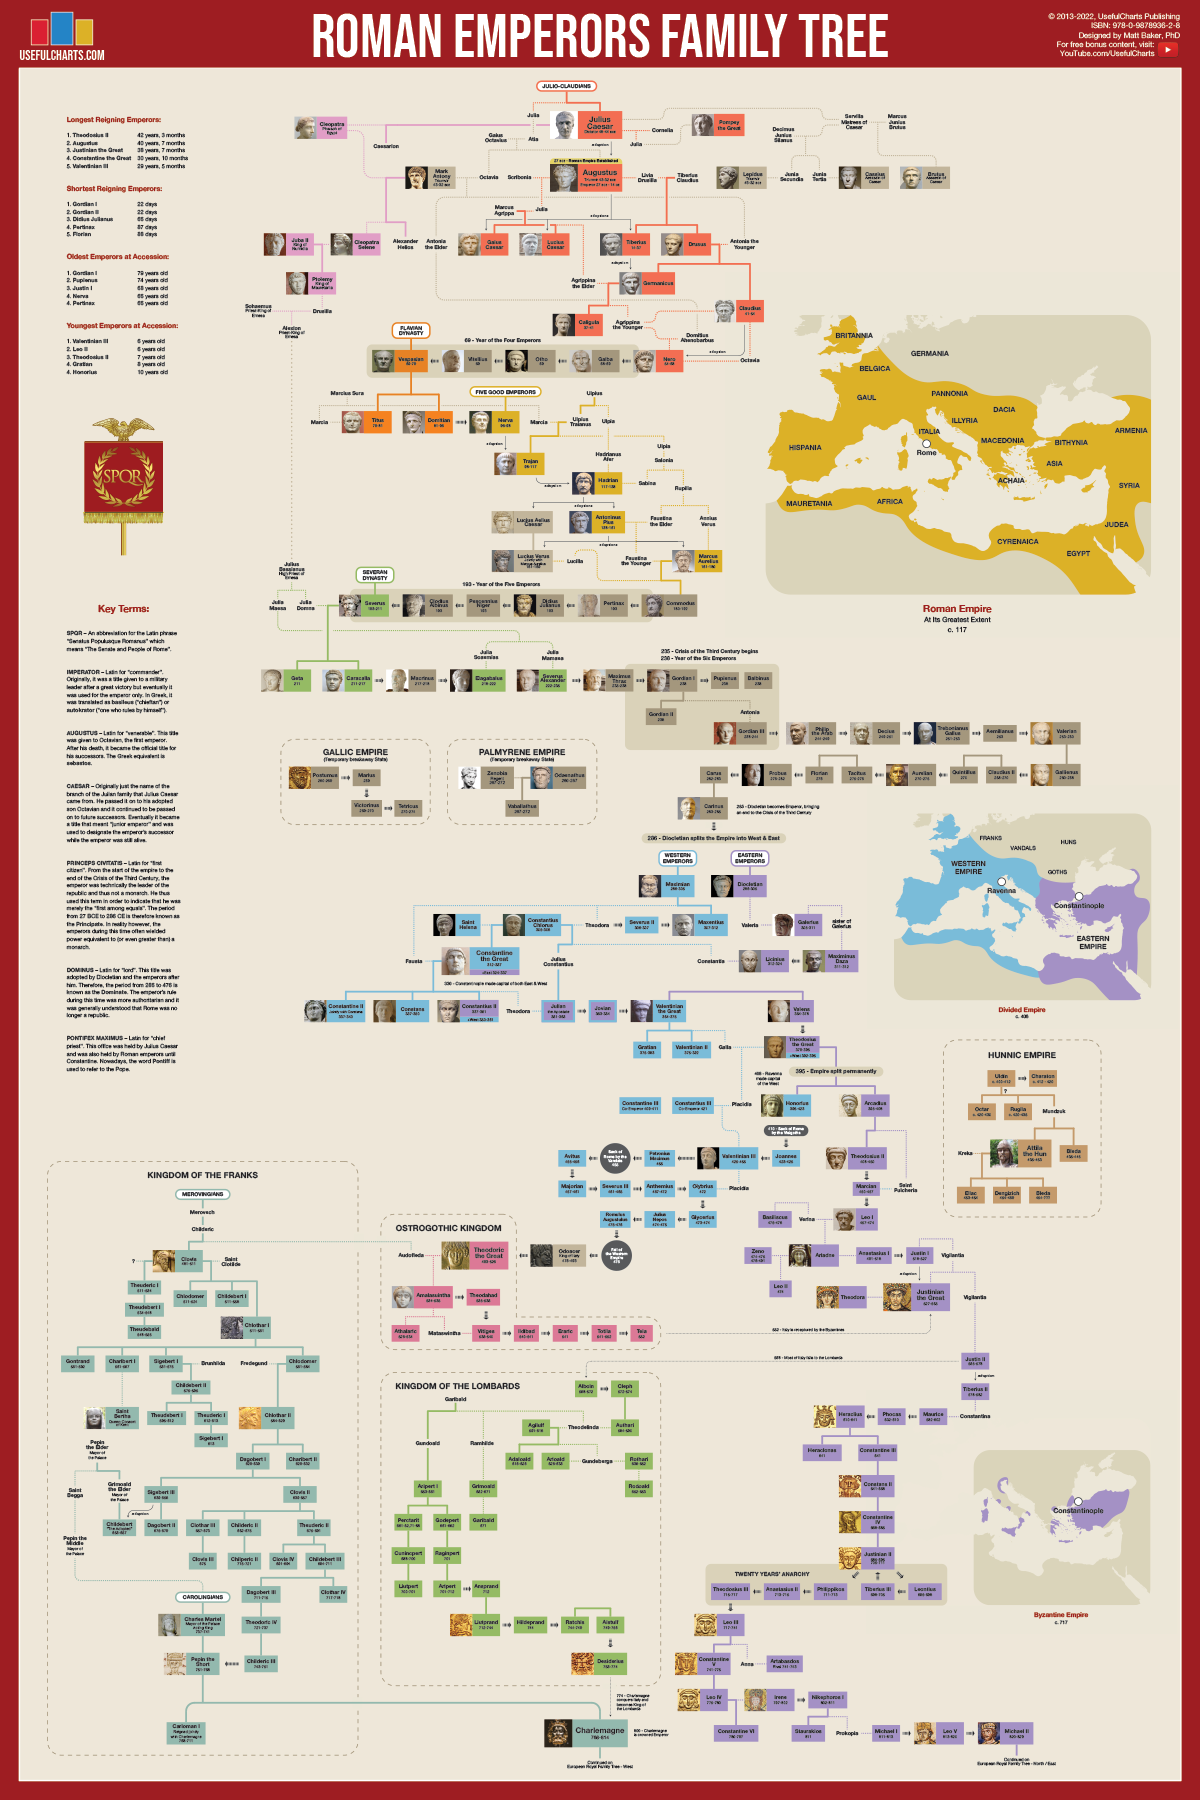 Roman Emperors Family Tree